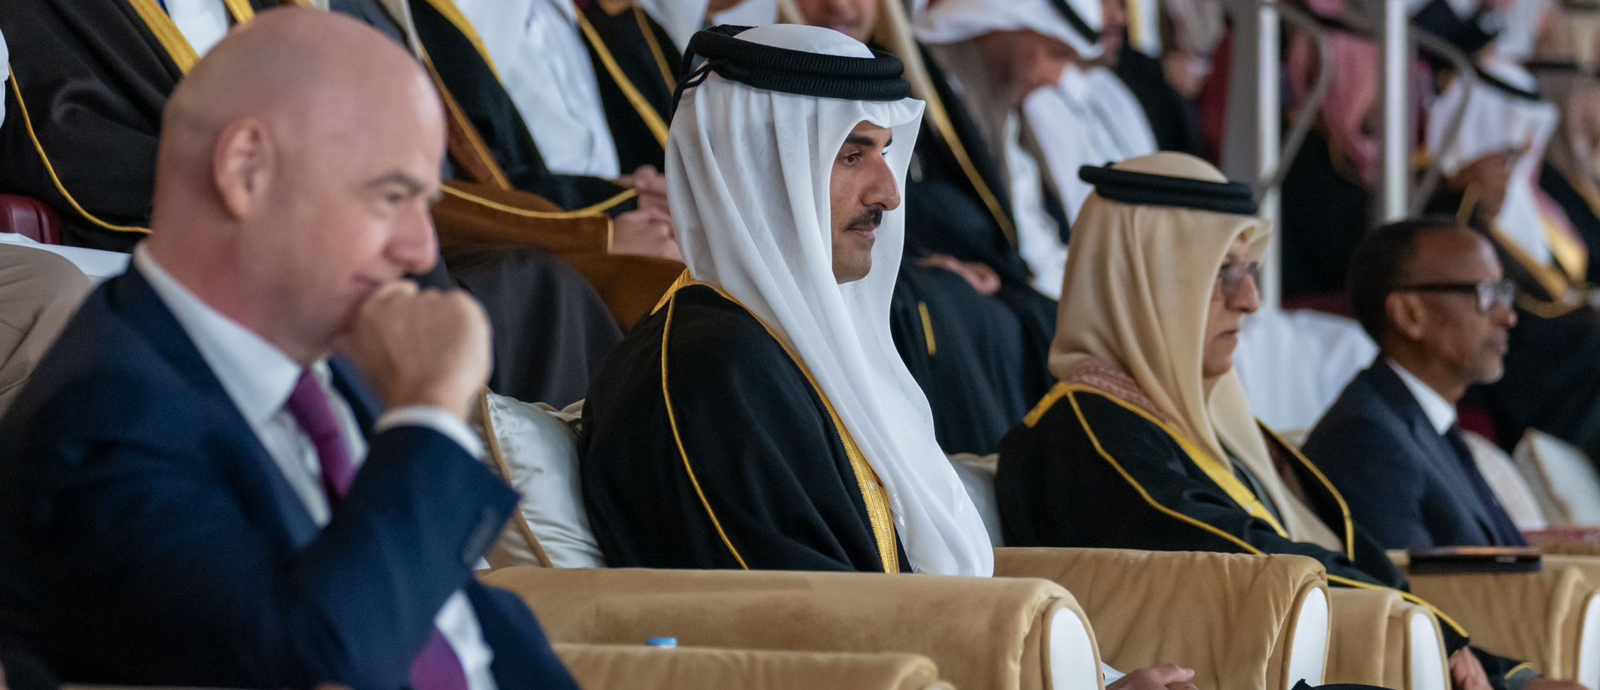 سمو الأمير يشهد ختام بطولة كأس آسيا قطر 2023